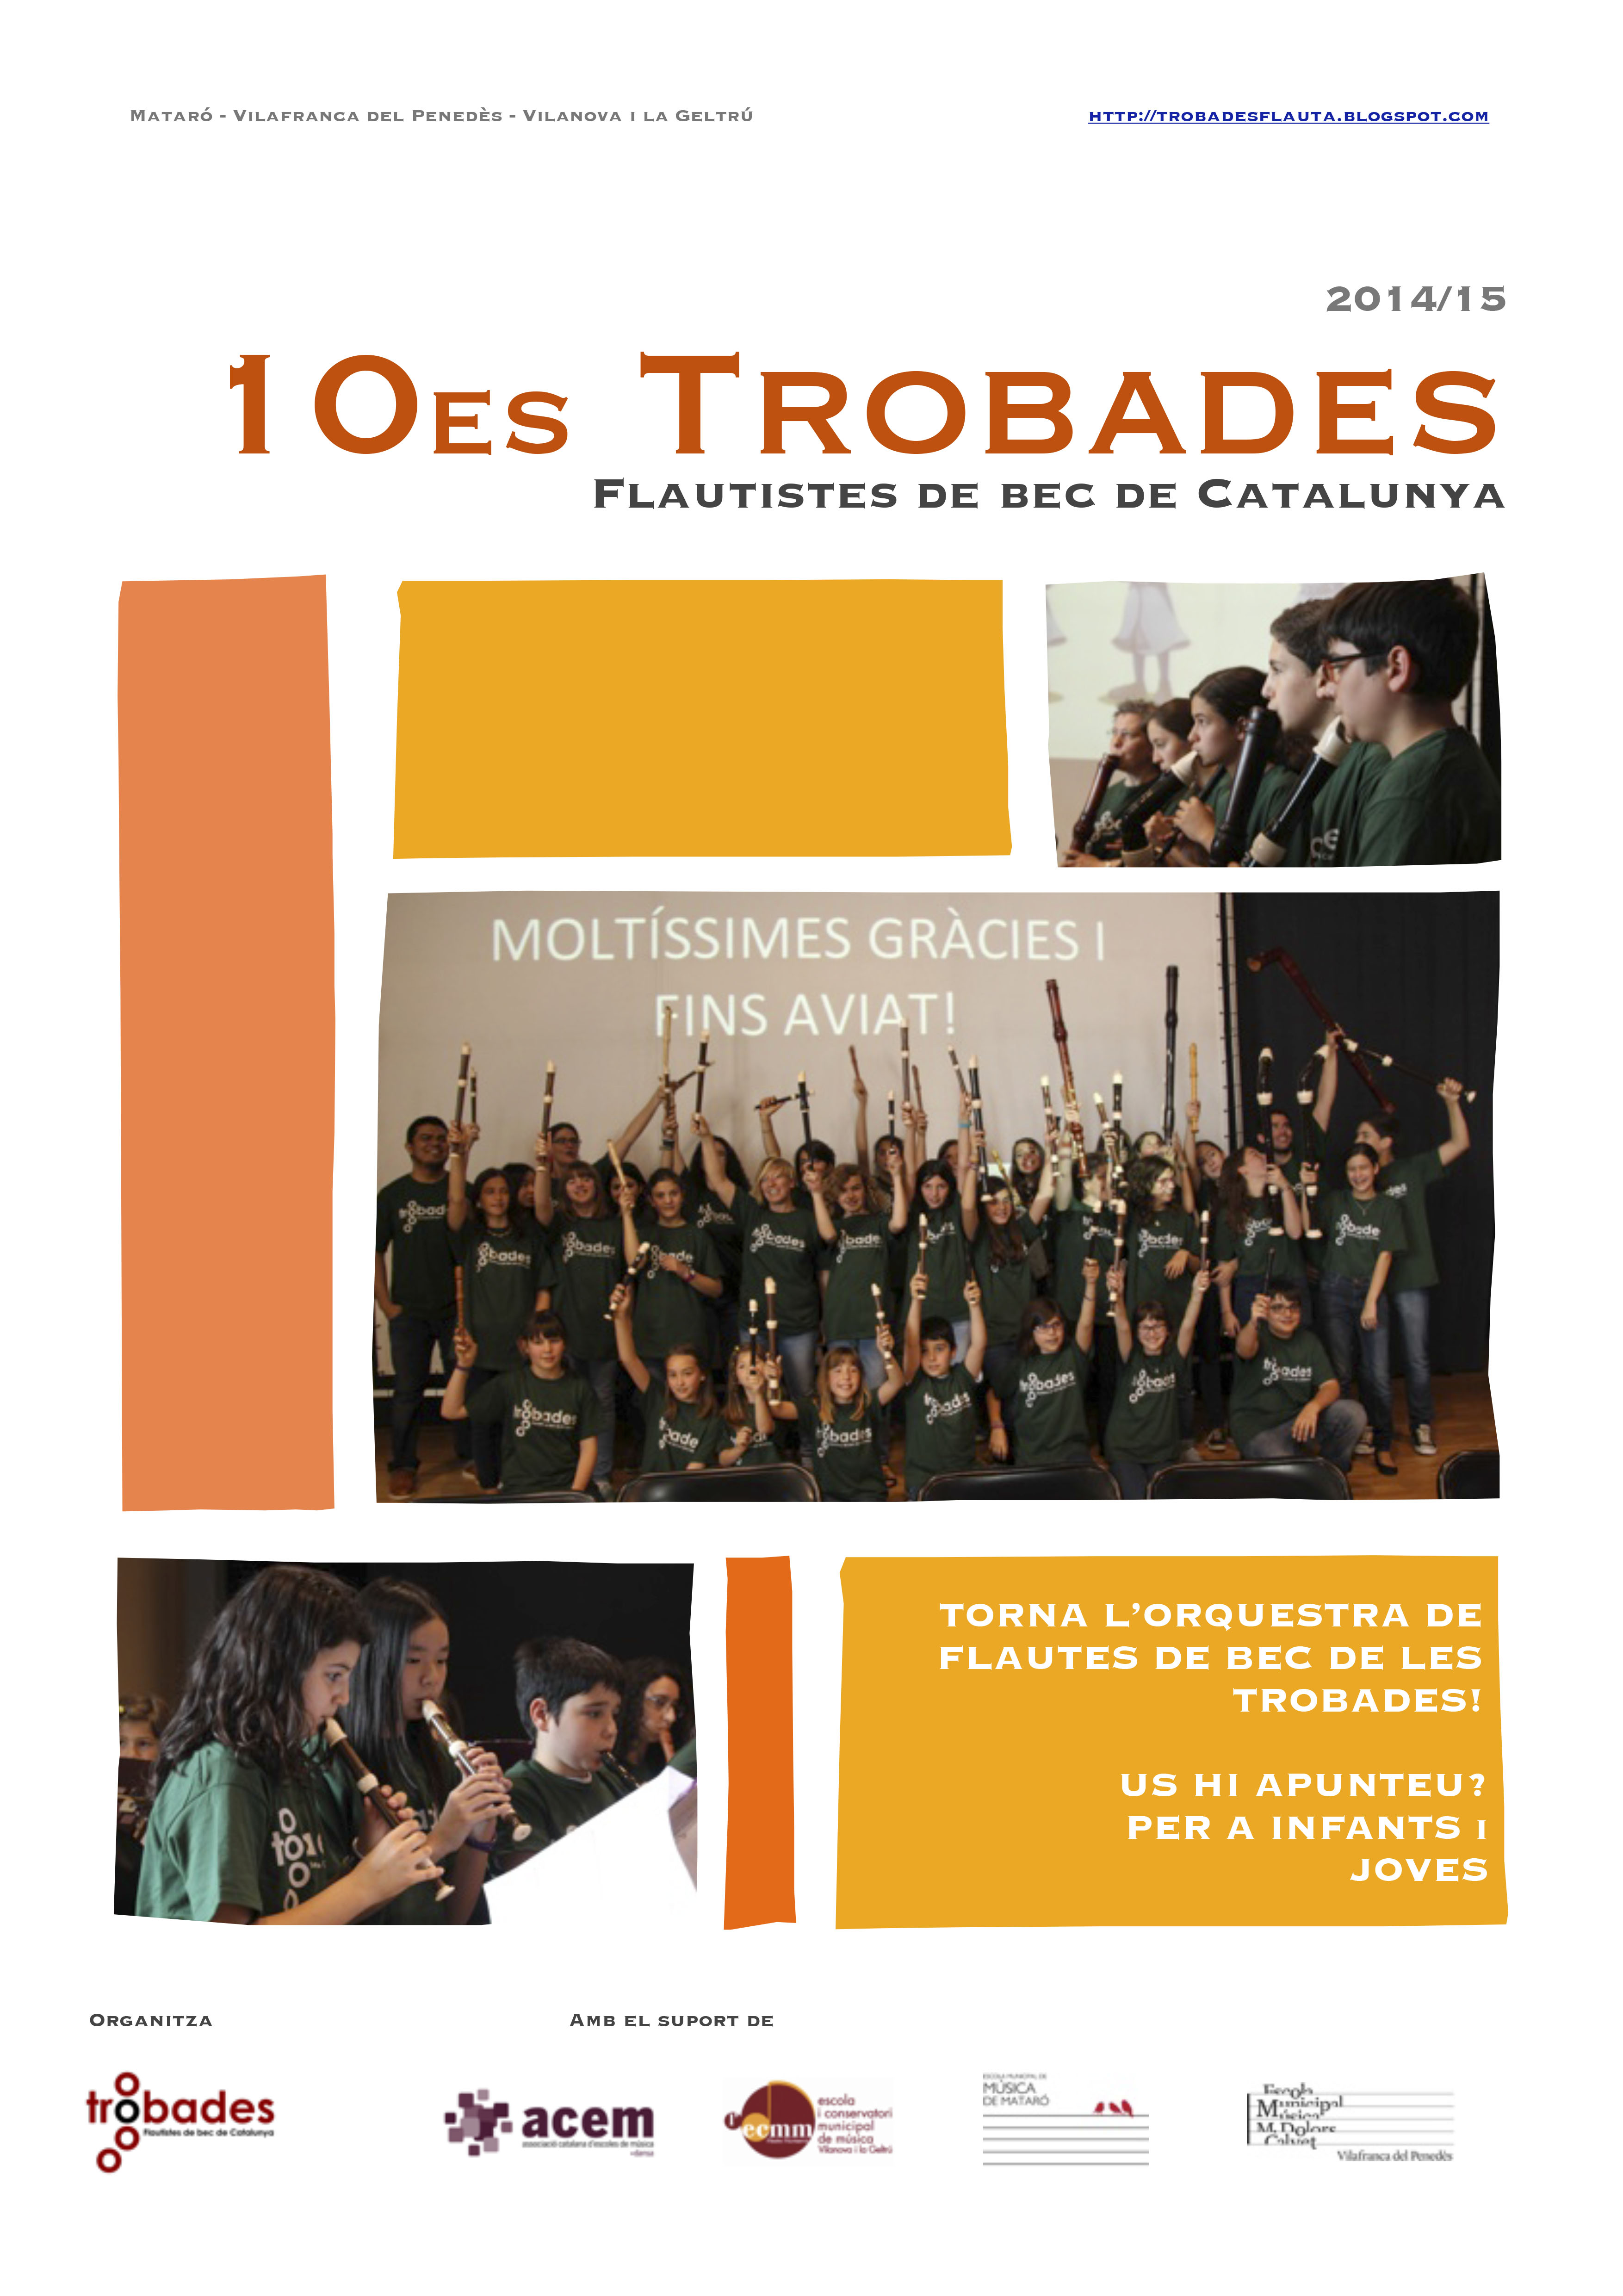 2n encontre de les 10º Trobades de Flautistes de Bec de Catalunya a Vilafranca del Penedès